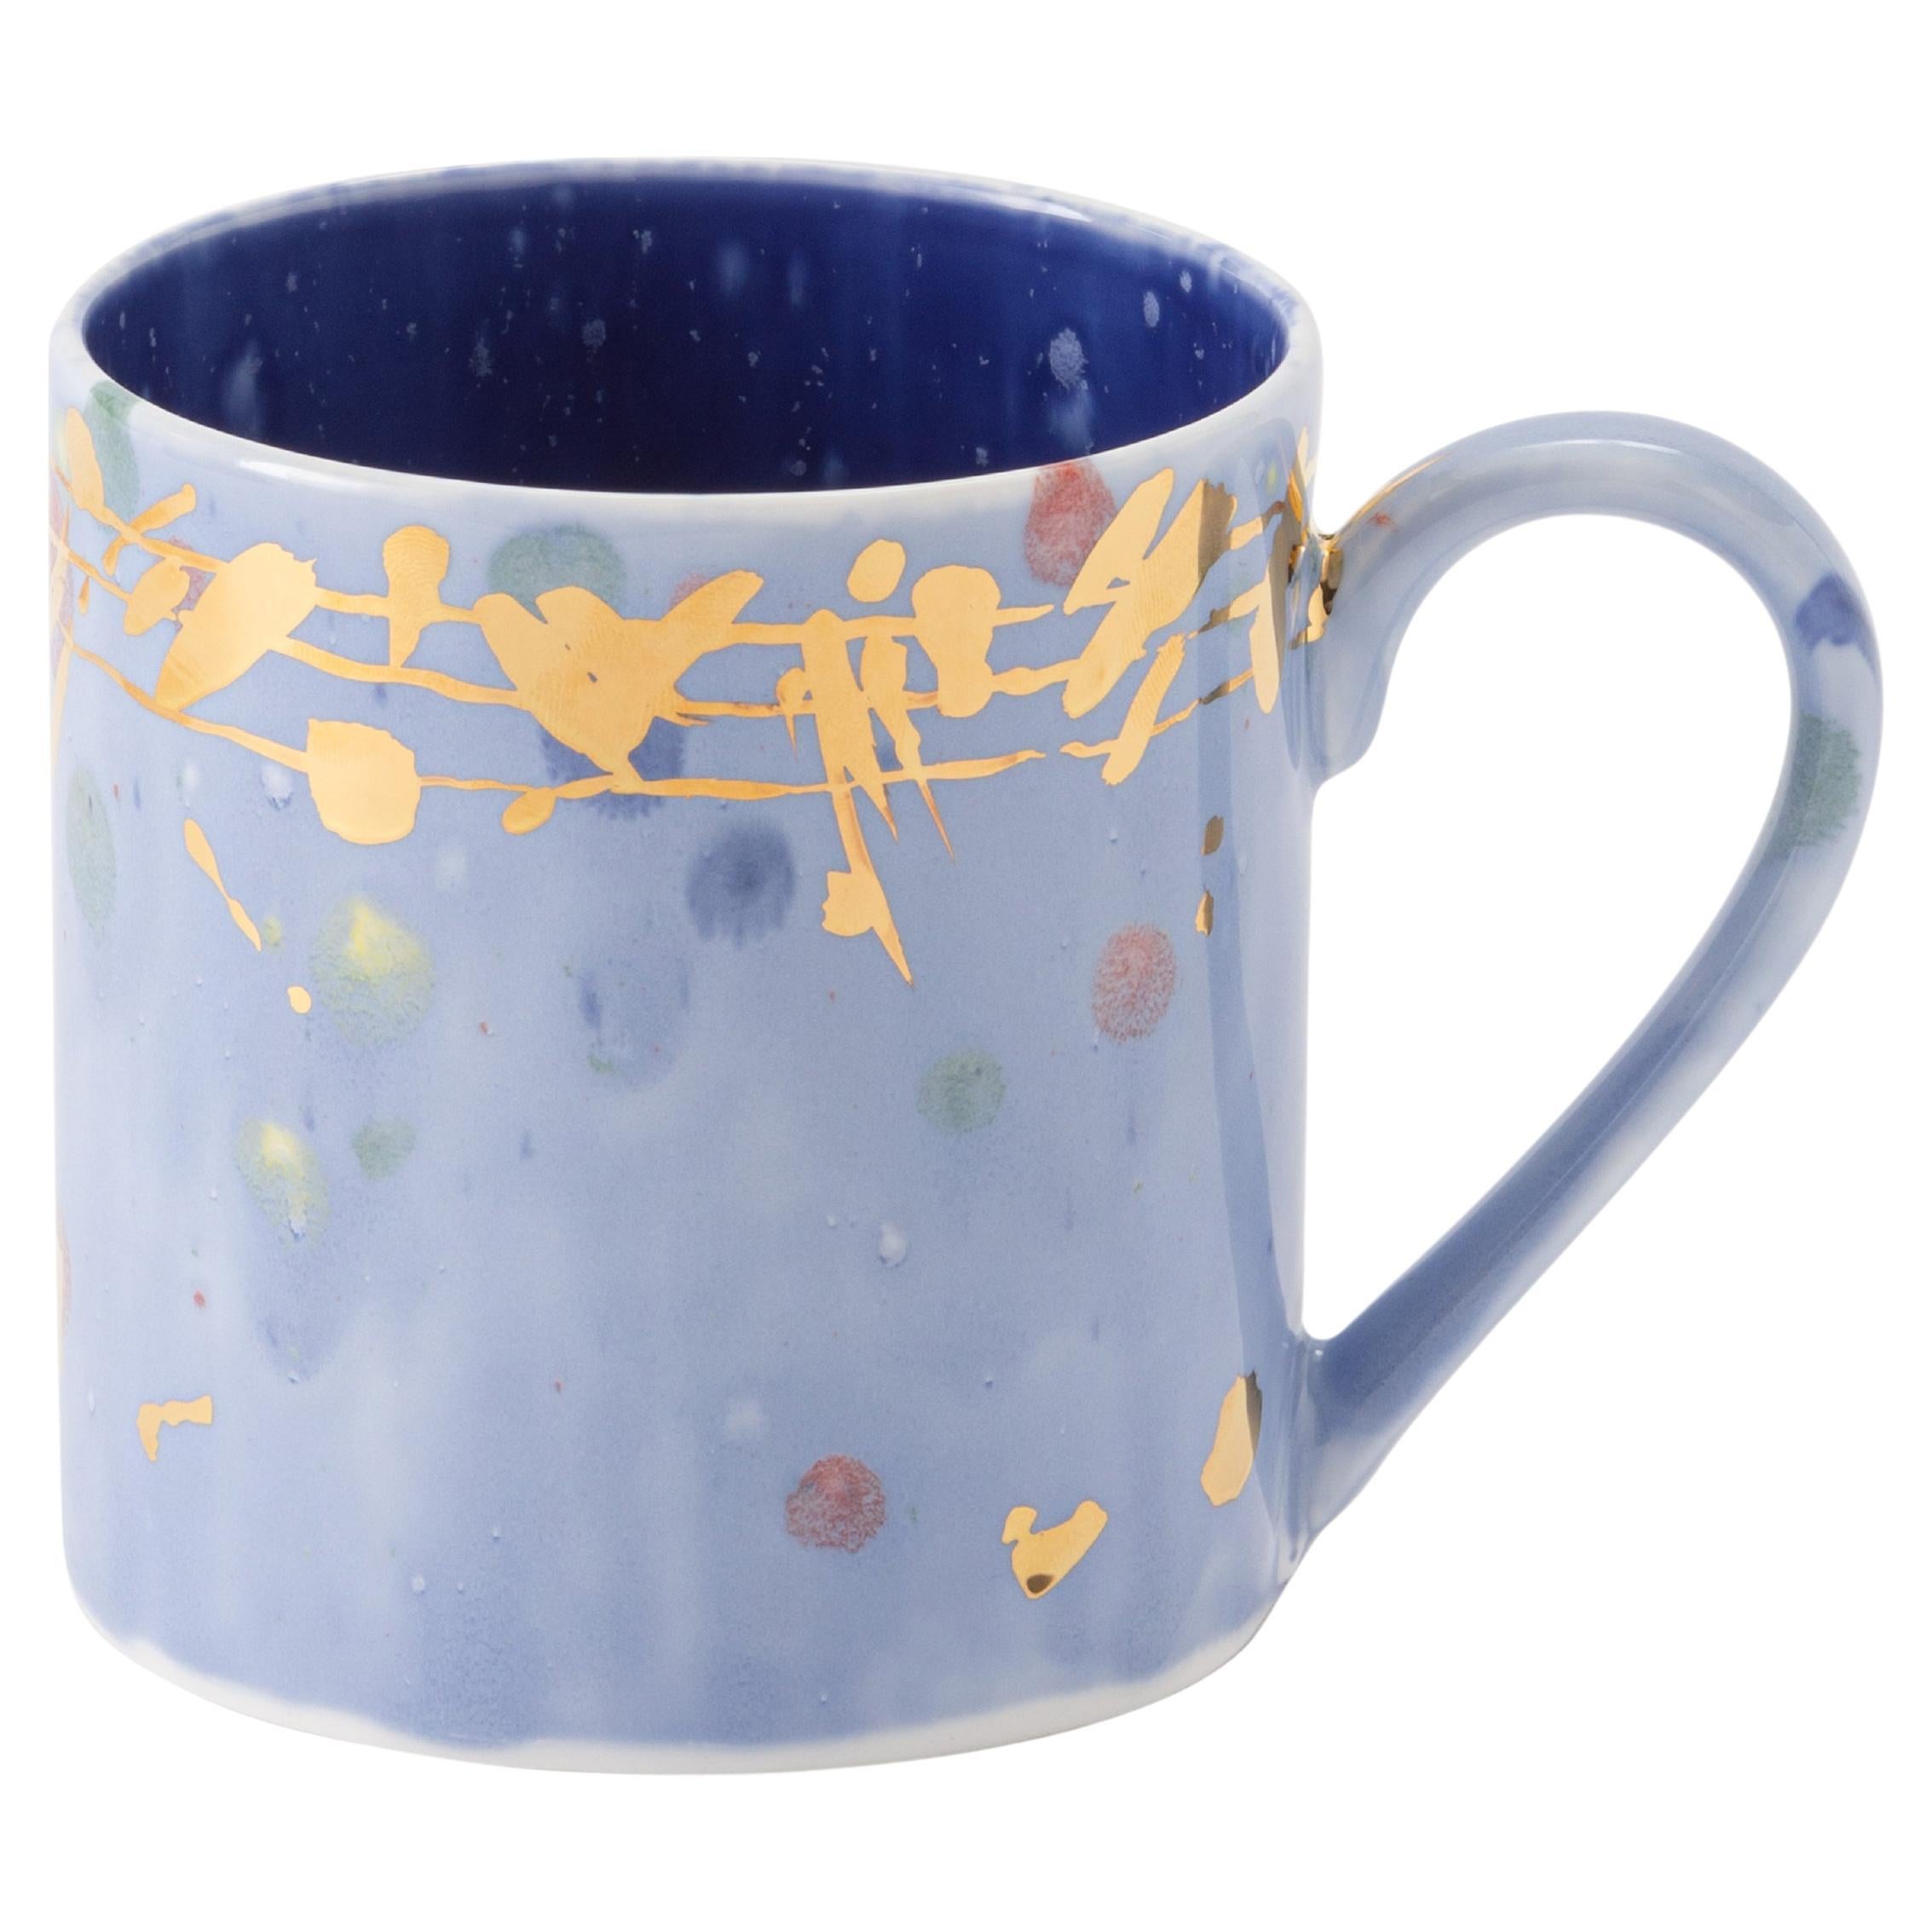 Ensemble contemporain de 2 grandes tasses en porcelaine bleue et or peintes à la main